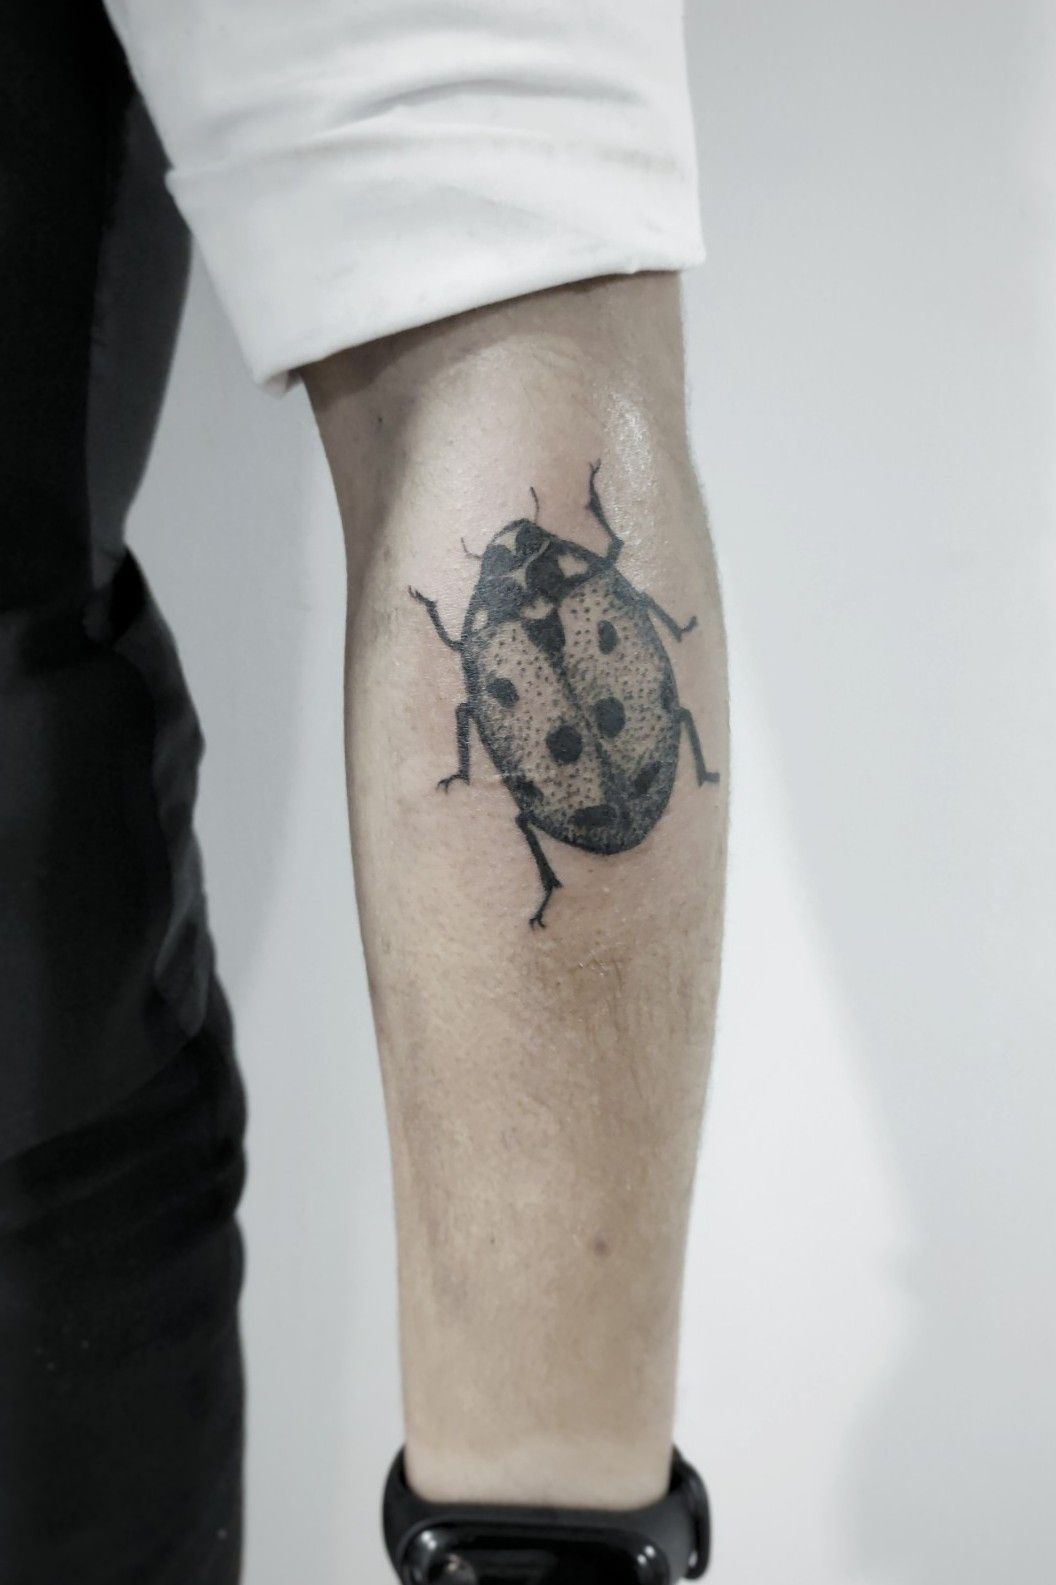 tattoo #tattoos #tat #tats #pretty #girly #ladybug #insec… | Flickr